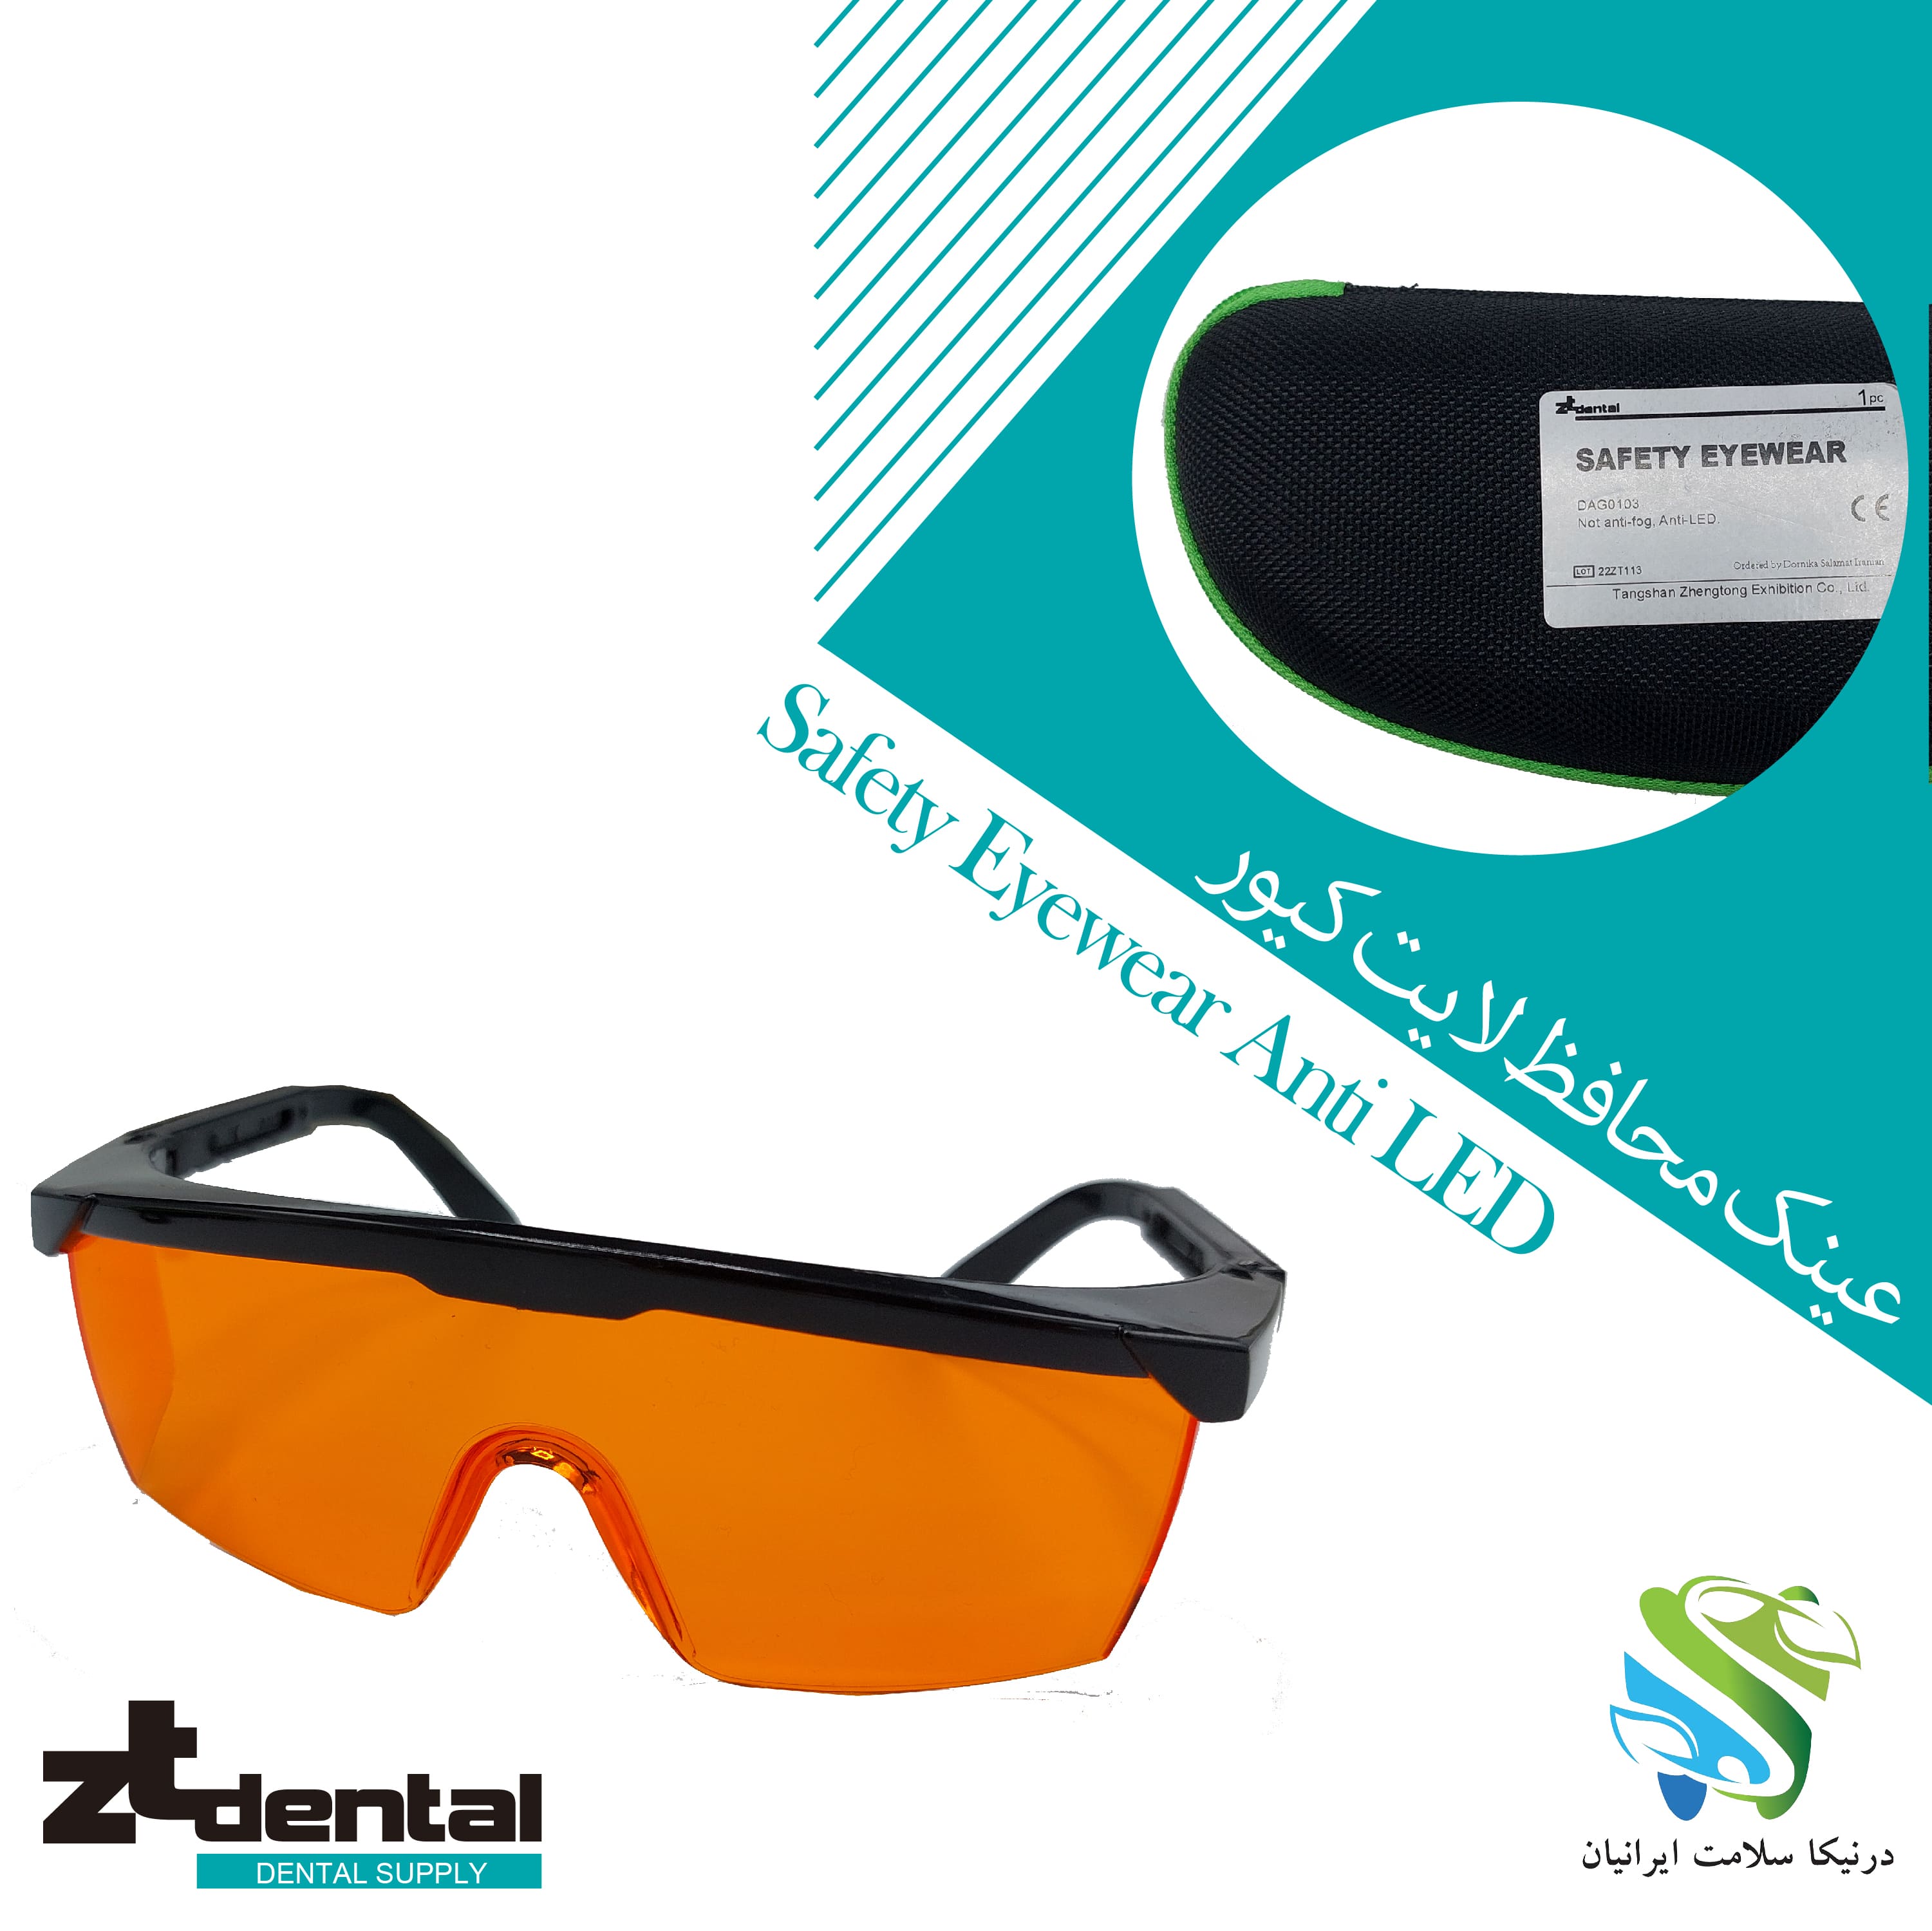 عینک محافظ لایت کیور  Zt dental Safety Eyewear Anti LED